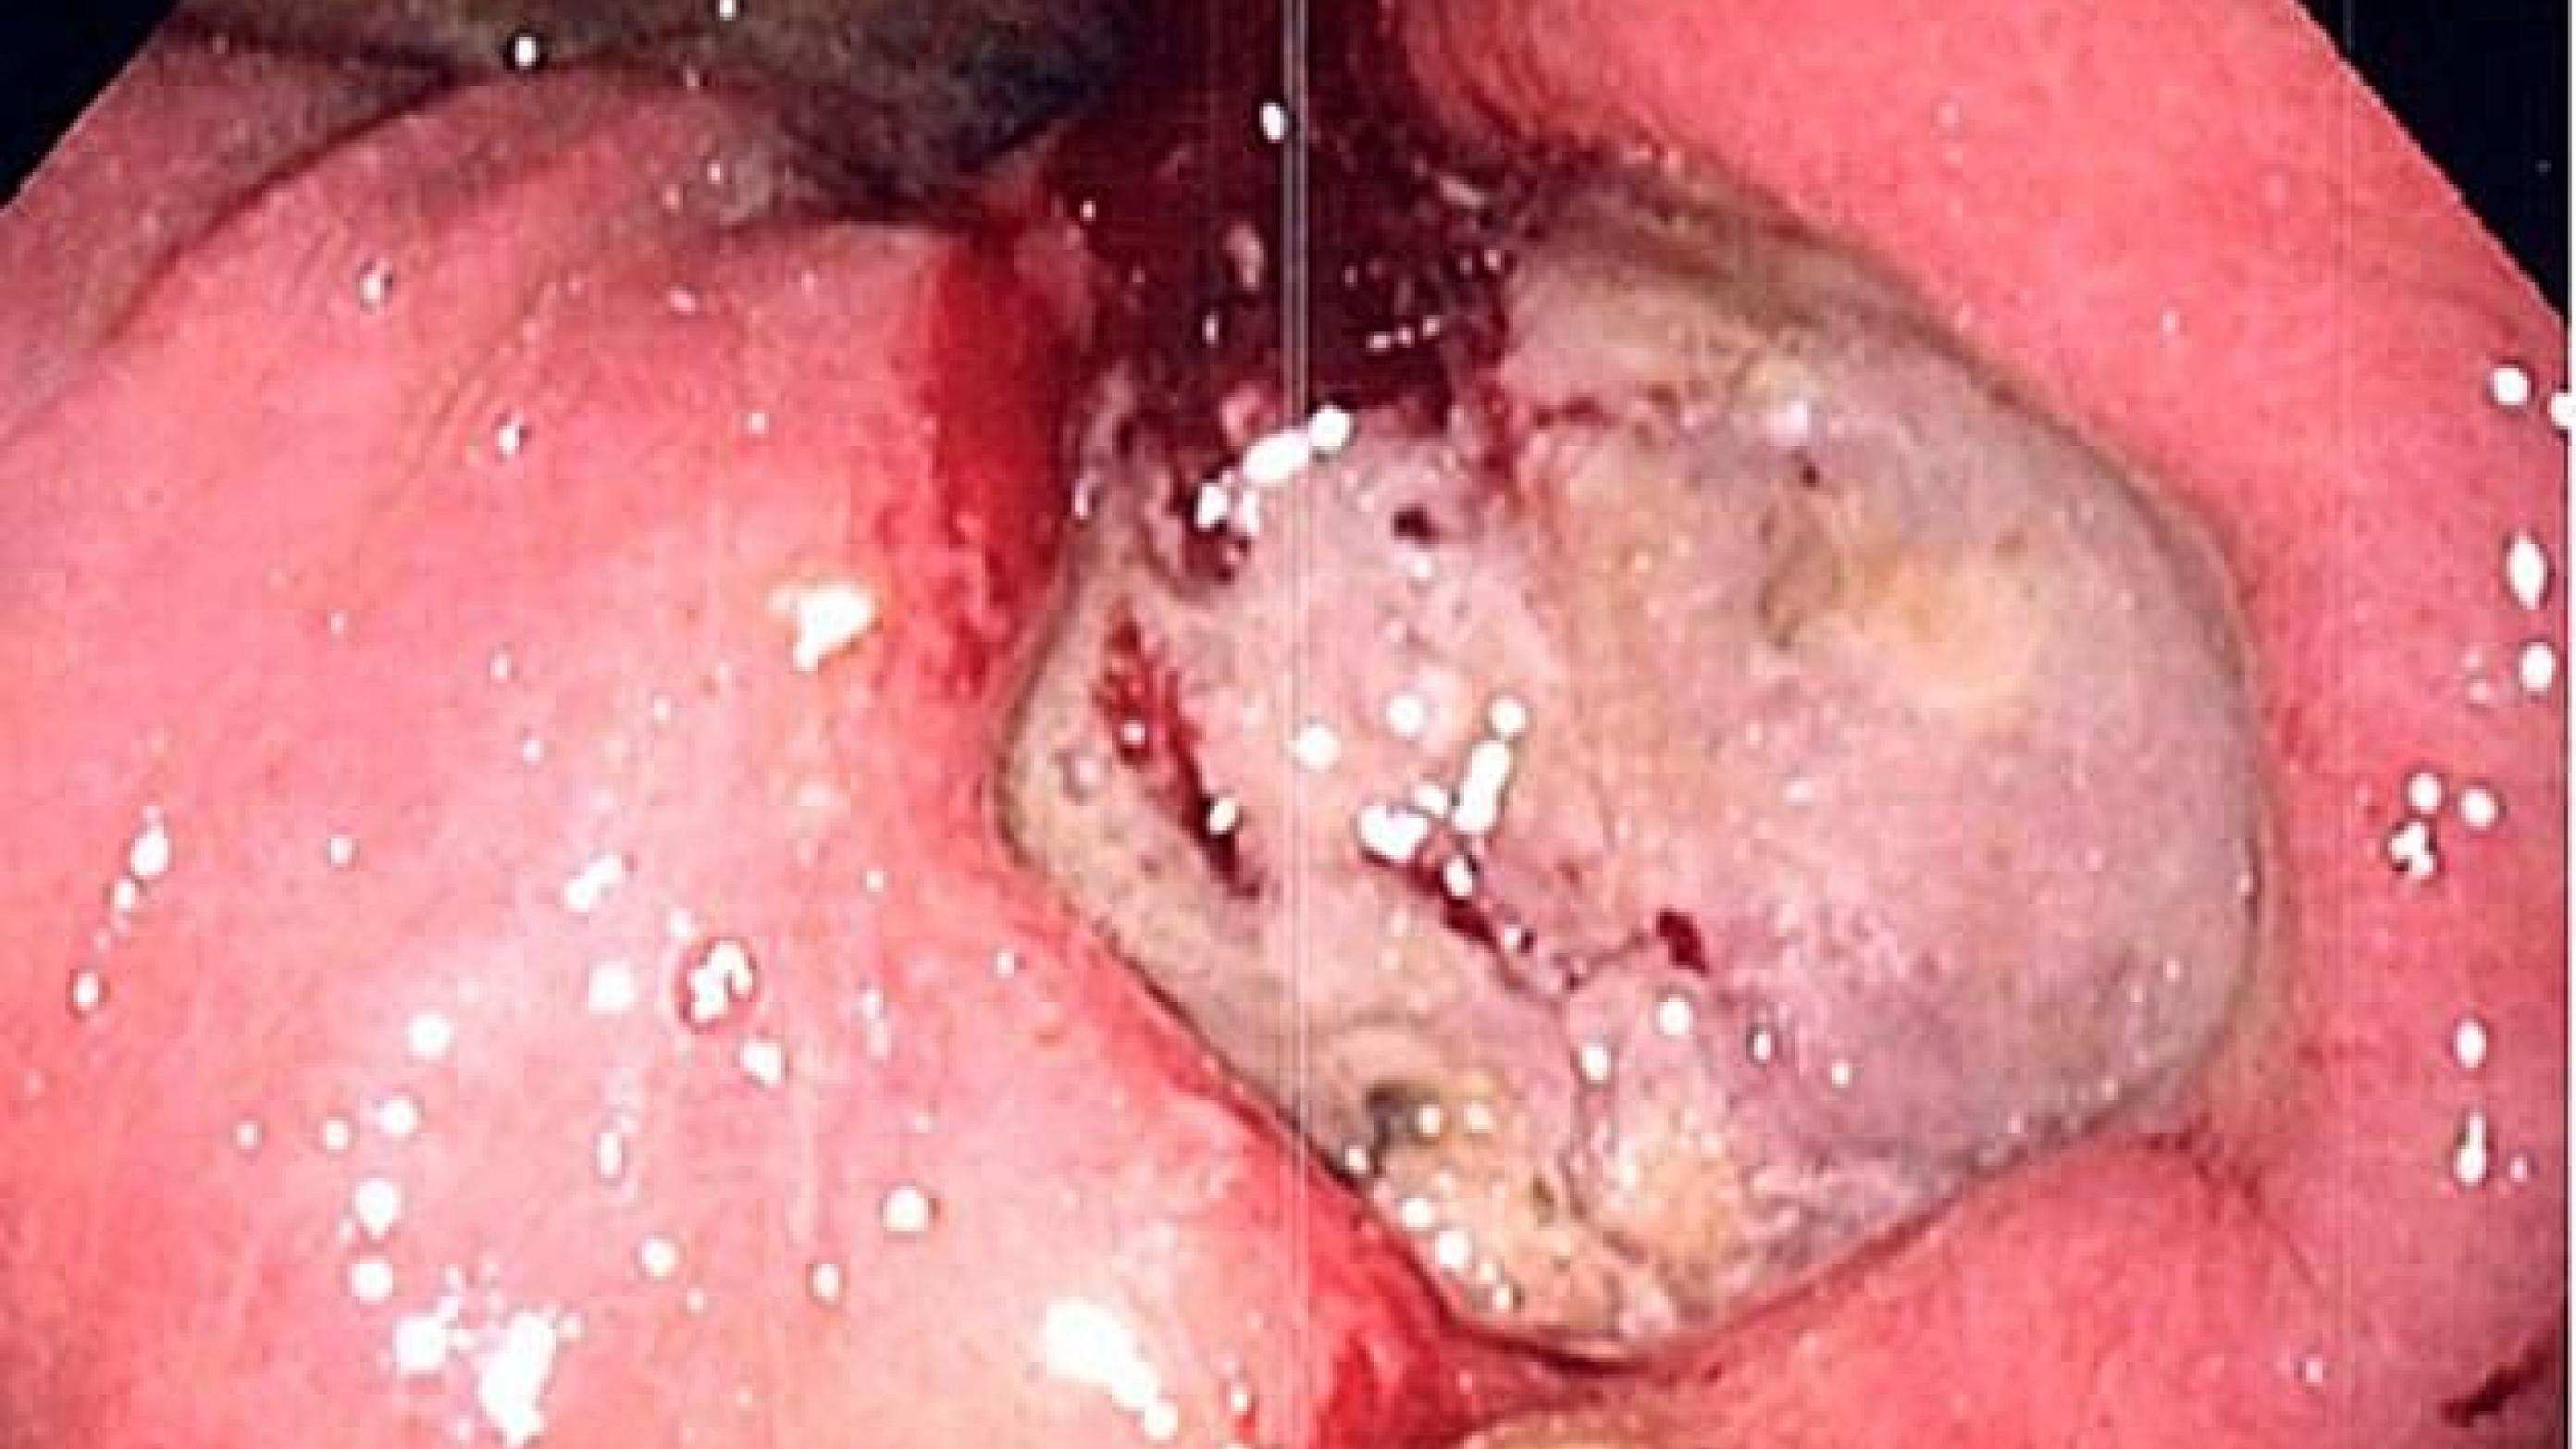 Fibrinbelagt ulcus ventriculi med randblødning.